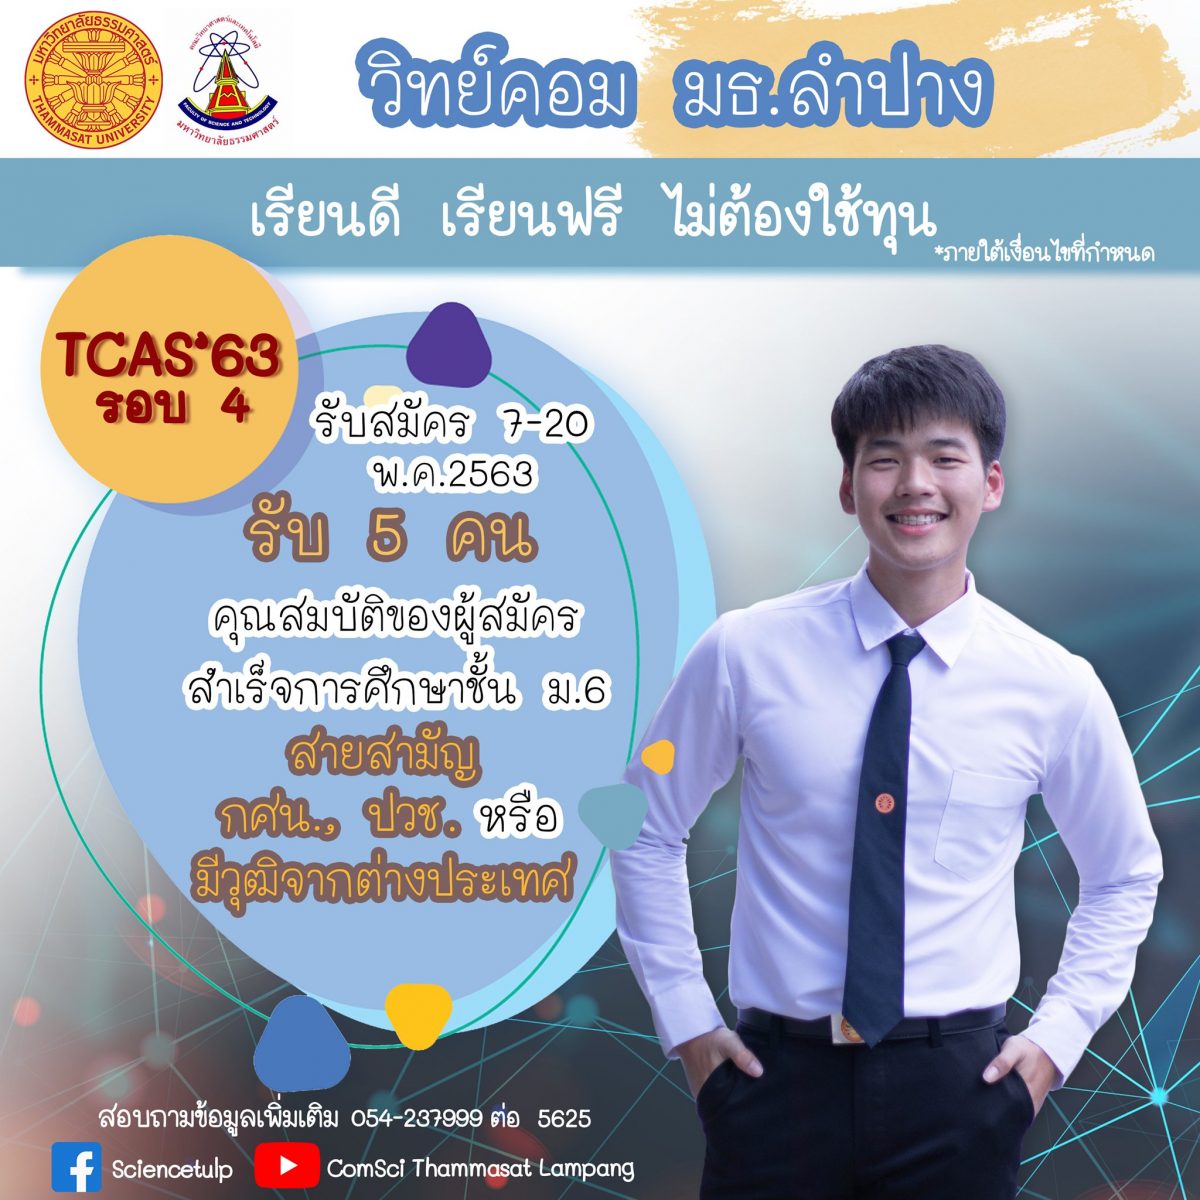 อยากเรียน วิทย์คอมฯ ต้อง วิทย์คอมฯ มธ. ! แห่งแรกของประเทศ กับการปั้นความทันสมัย มธ. ศูนย์ลำปาง รับภูมิภาคแห่งเทคโนโลยีของไทย